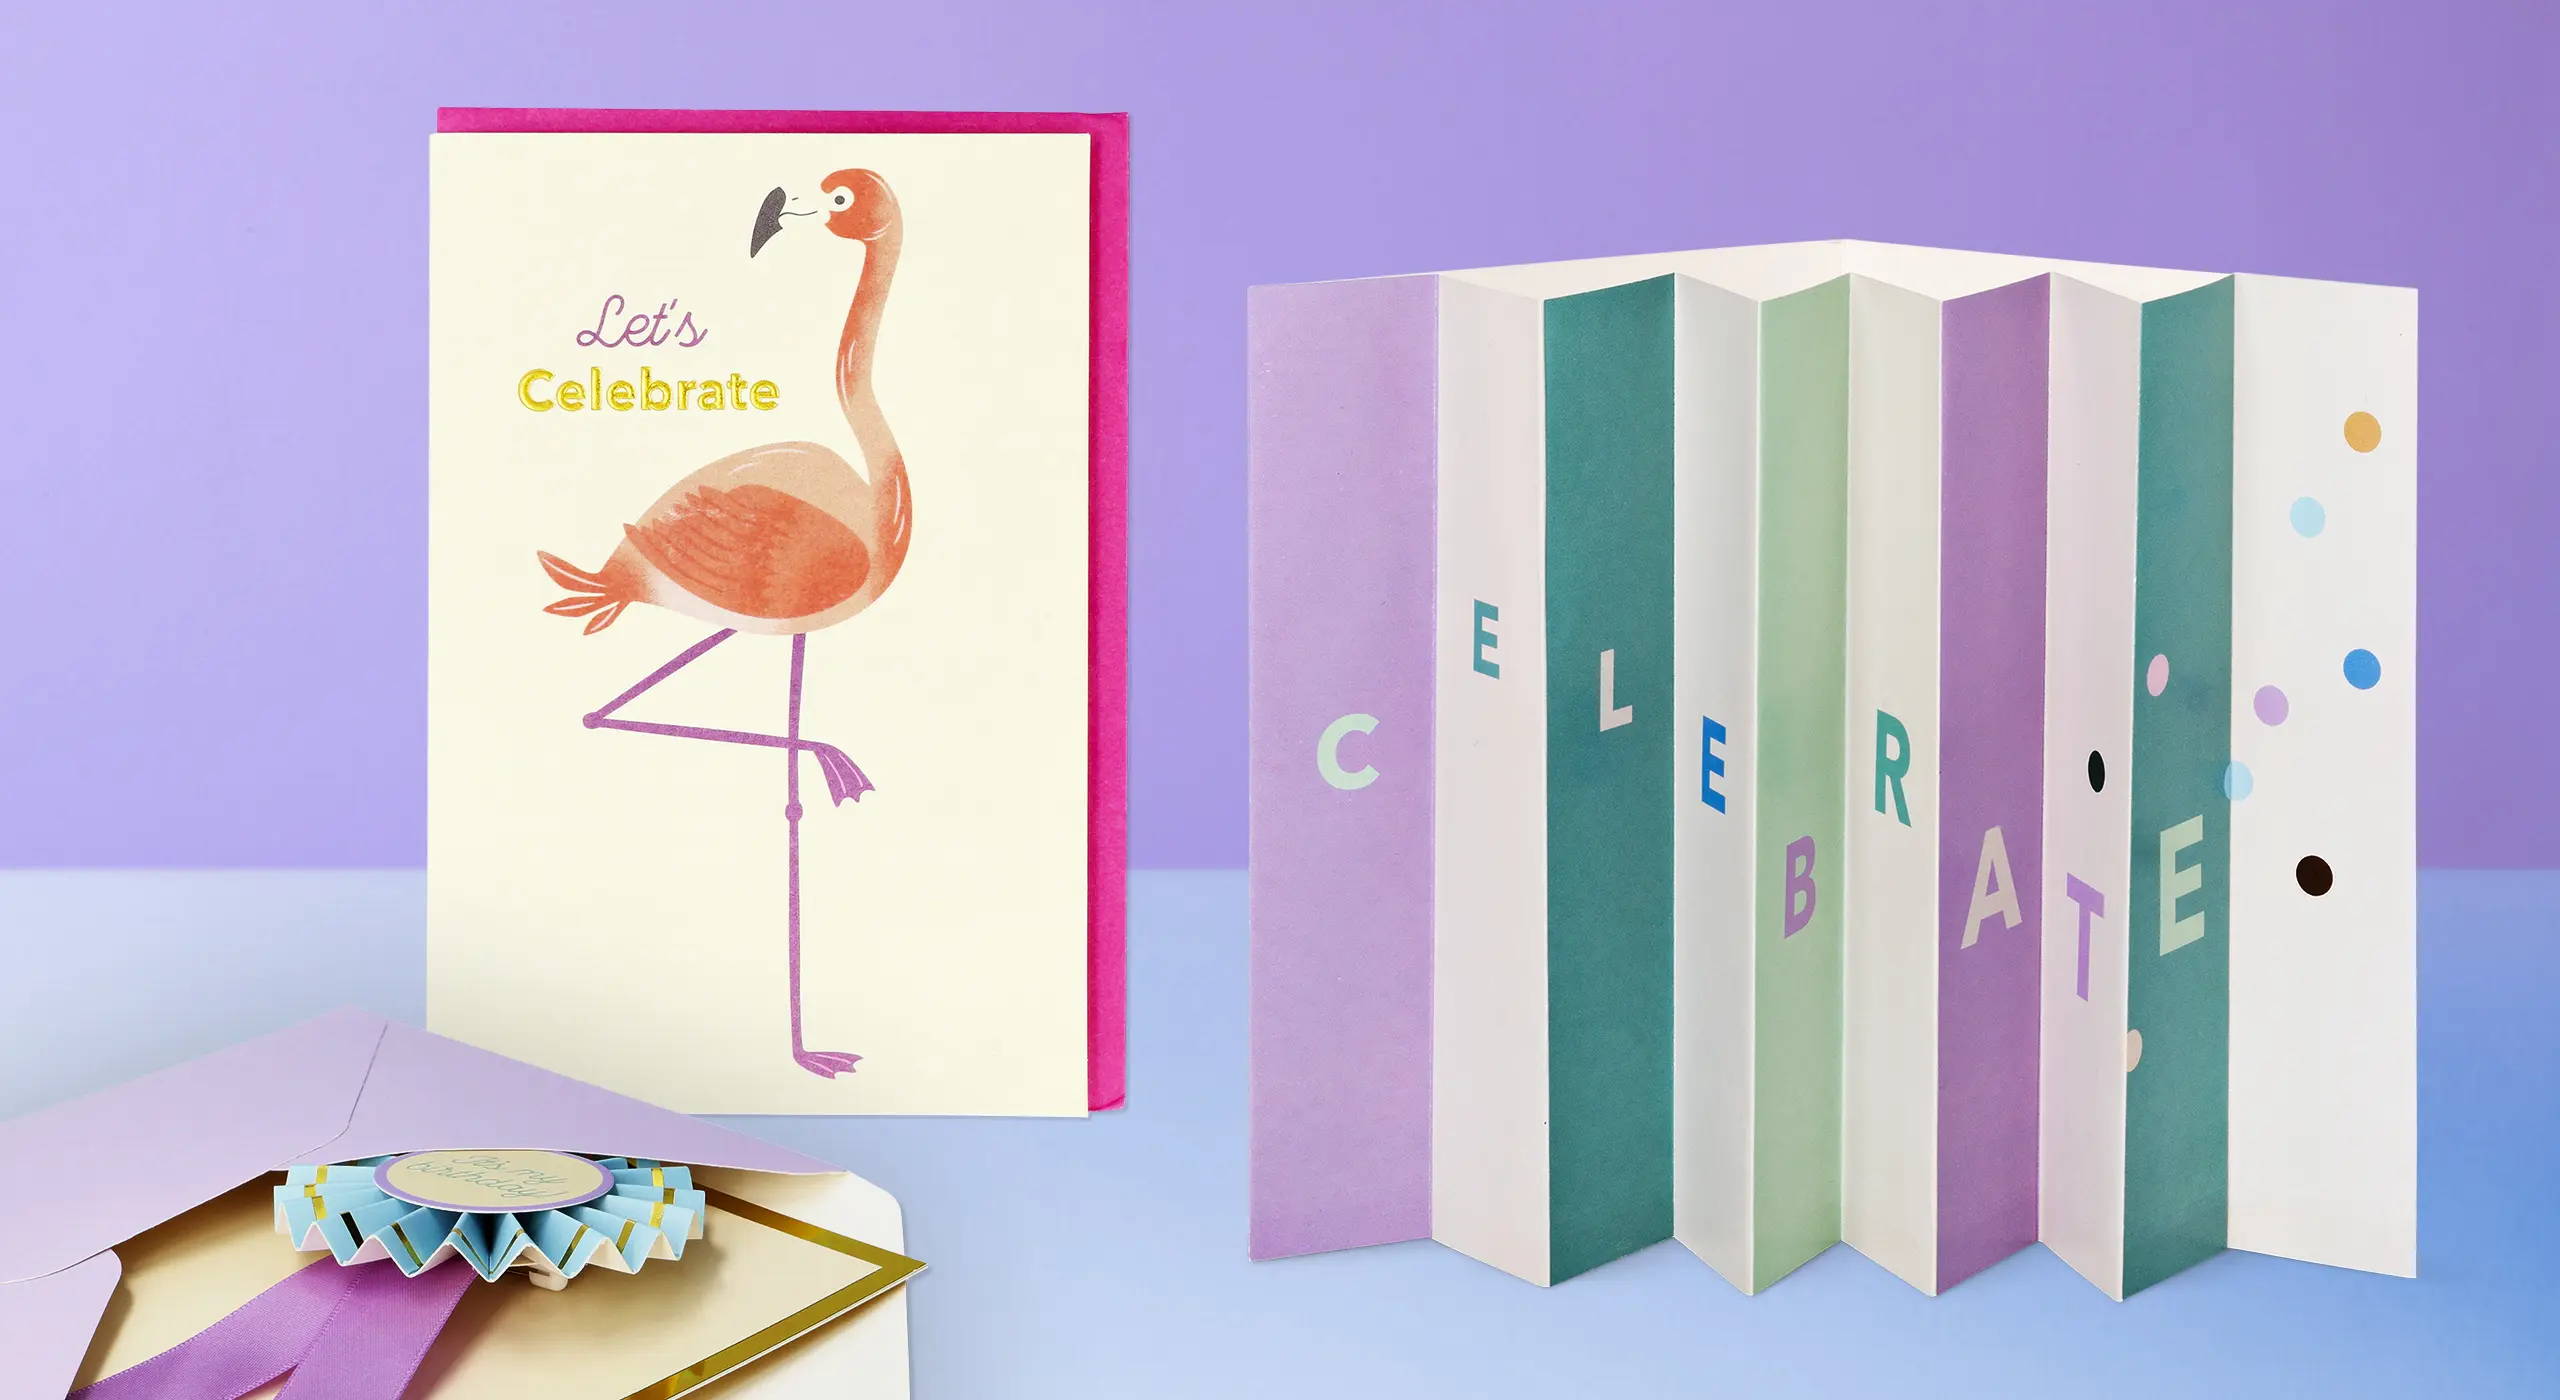 Et 'Let's Celebrate'-flamingokort ved siden af harmonika-foldede festkort i pastelfarver